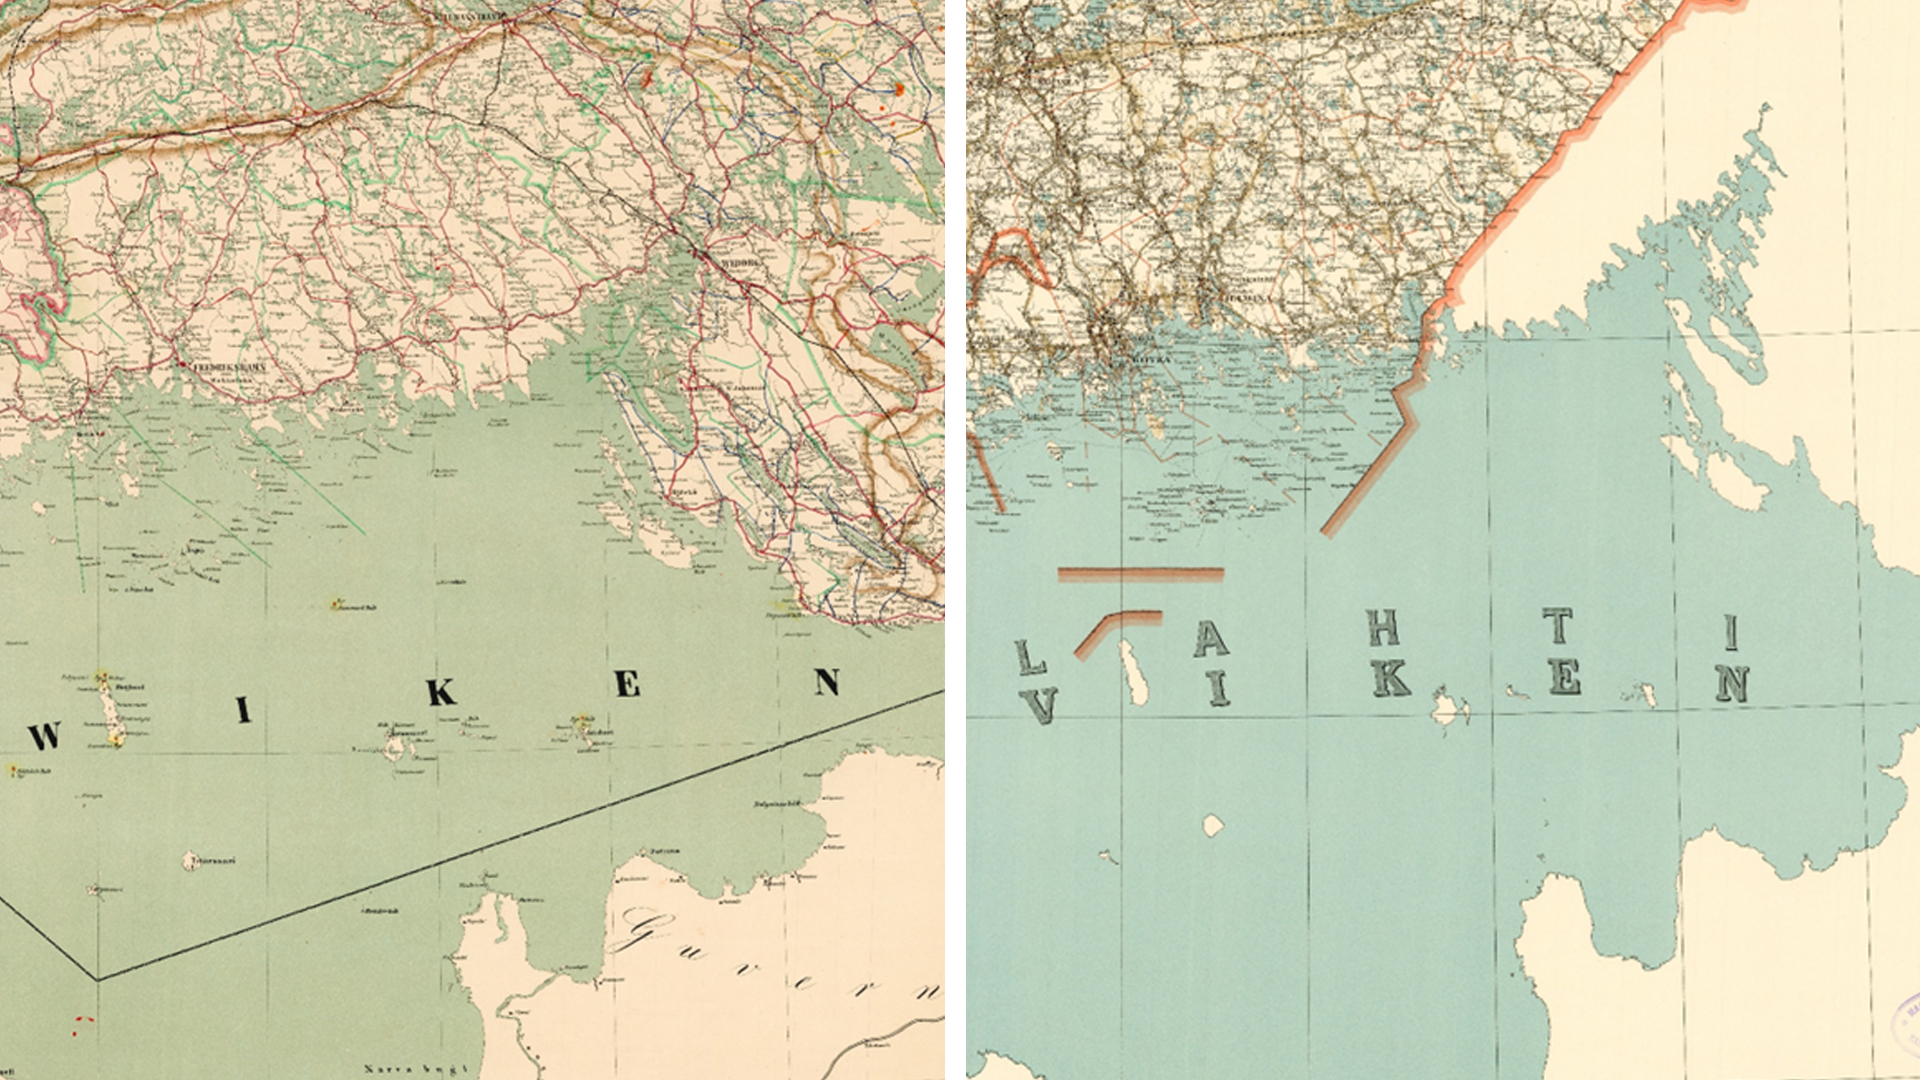 Kuvassa näkyy rinnakkain kaksi vanhaa karttaa, toinen vuodelta 1864 ja toinen vuodelta 1951.